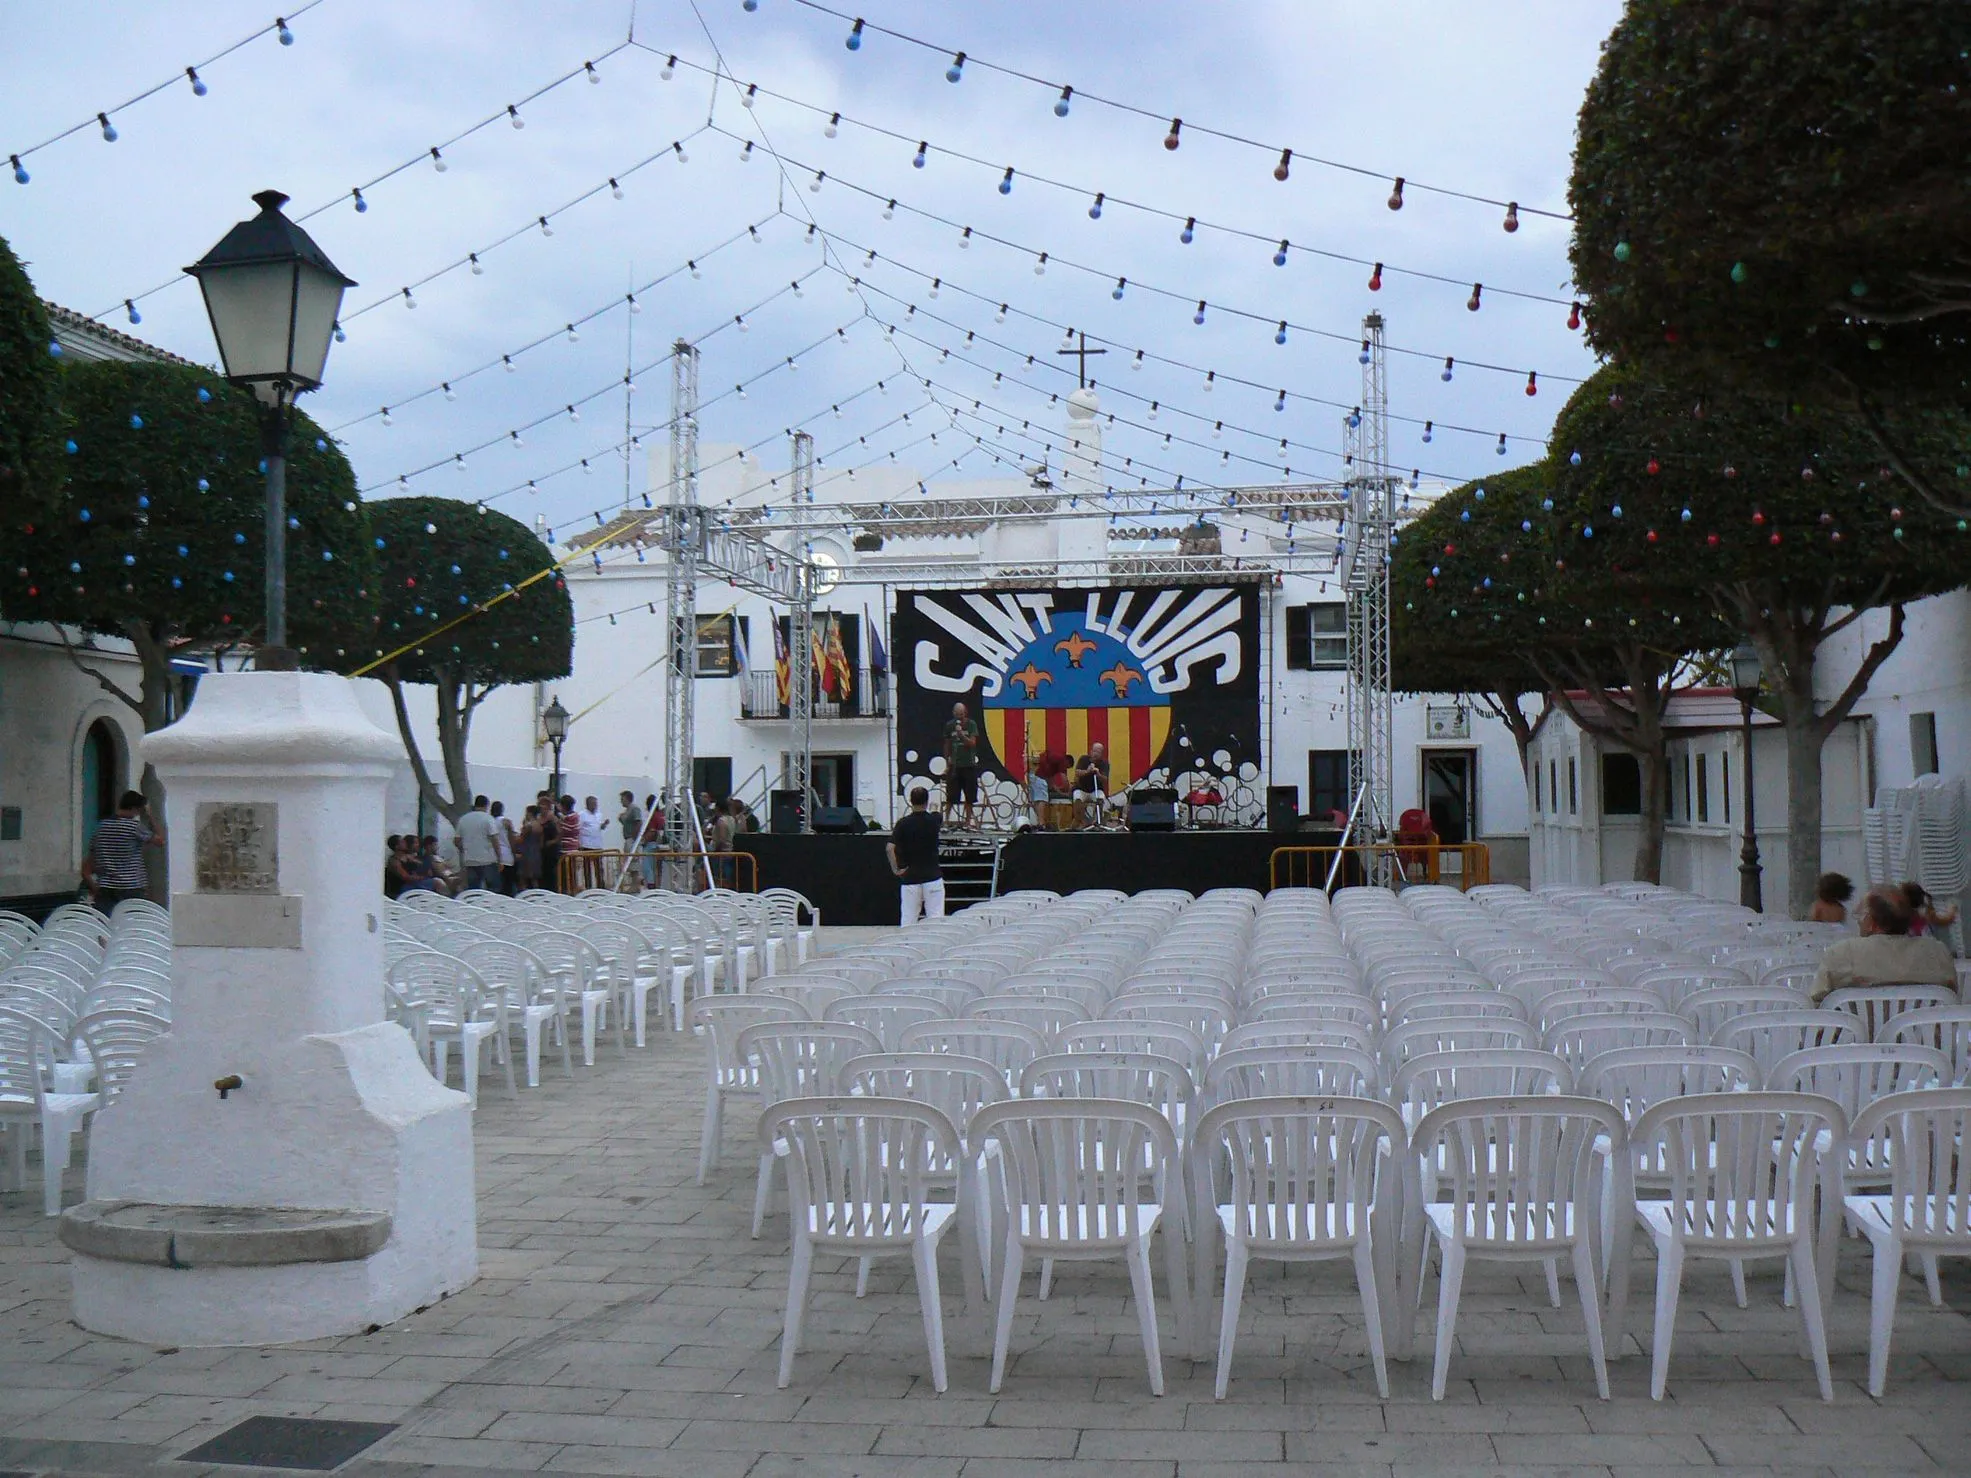 Photo showing: El pla de sa Creu amb l'ajuntament al fons, a l'esquerra, preparant-se per a les festes majors de Sant Lluís (Menorca), que es celebren el dia 25 d'agost. Vista des de l'esglèsia de Sant Lluís.